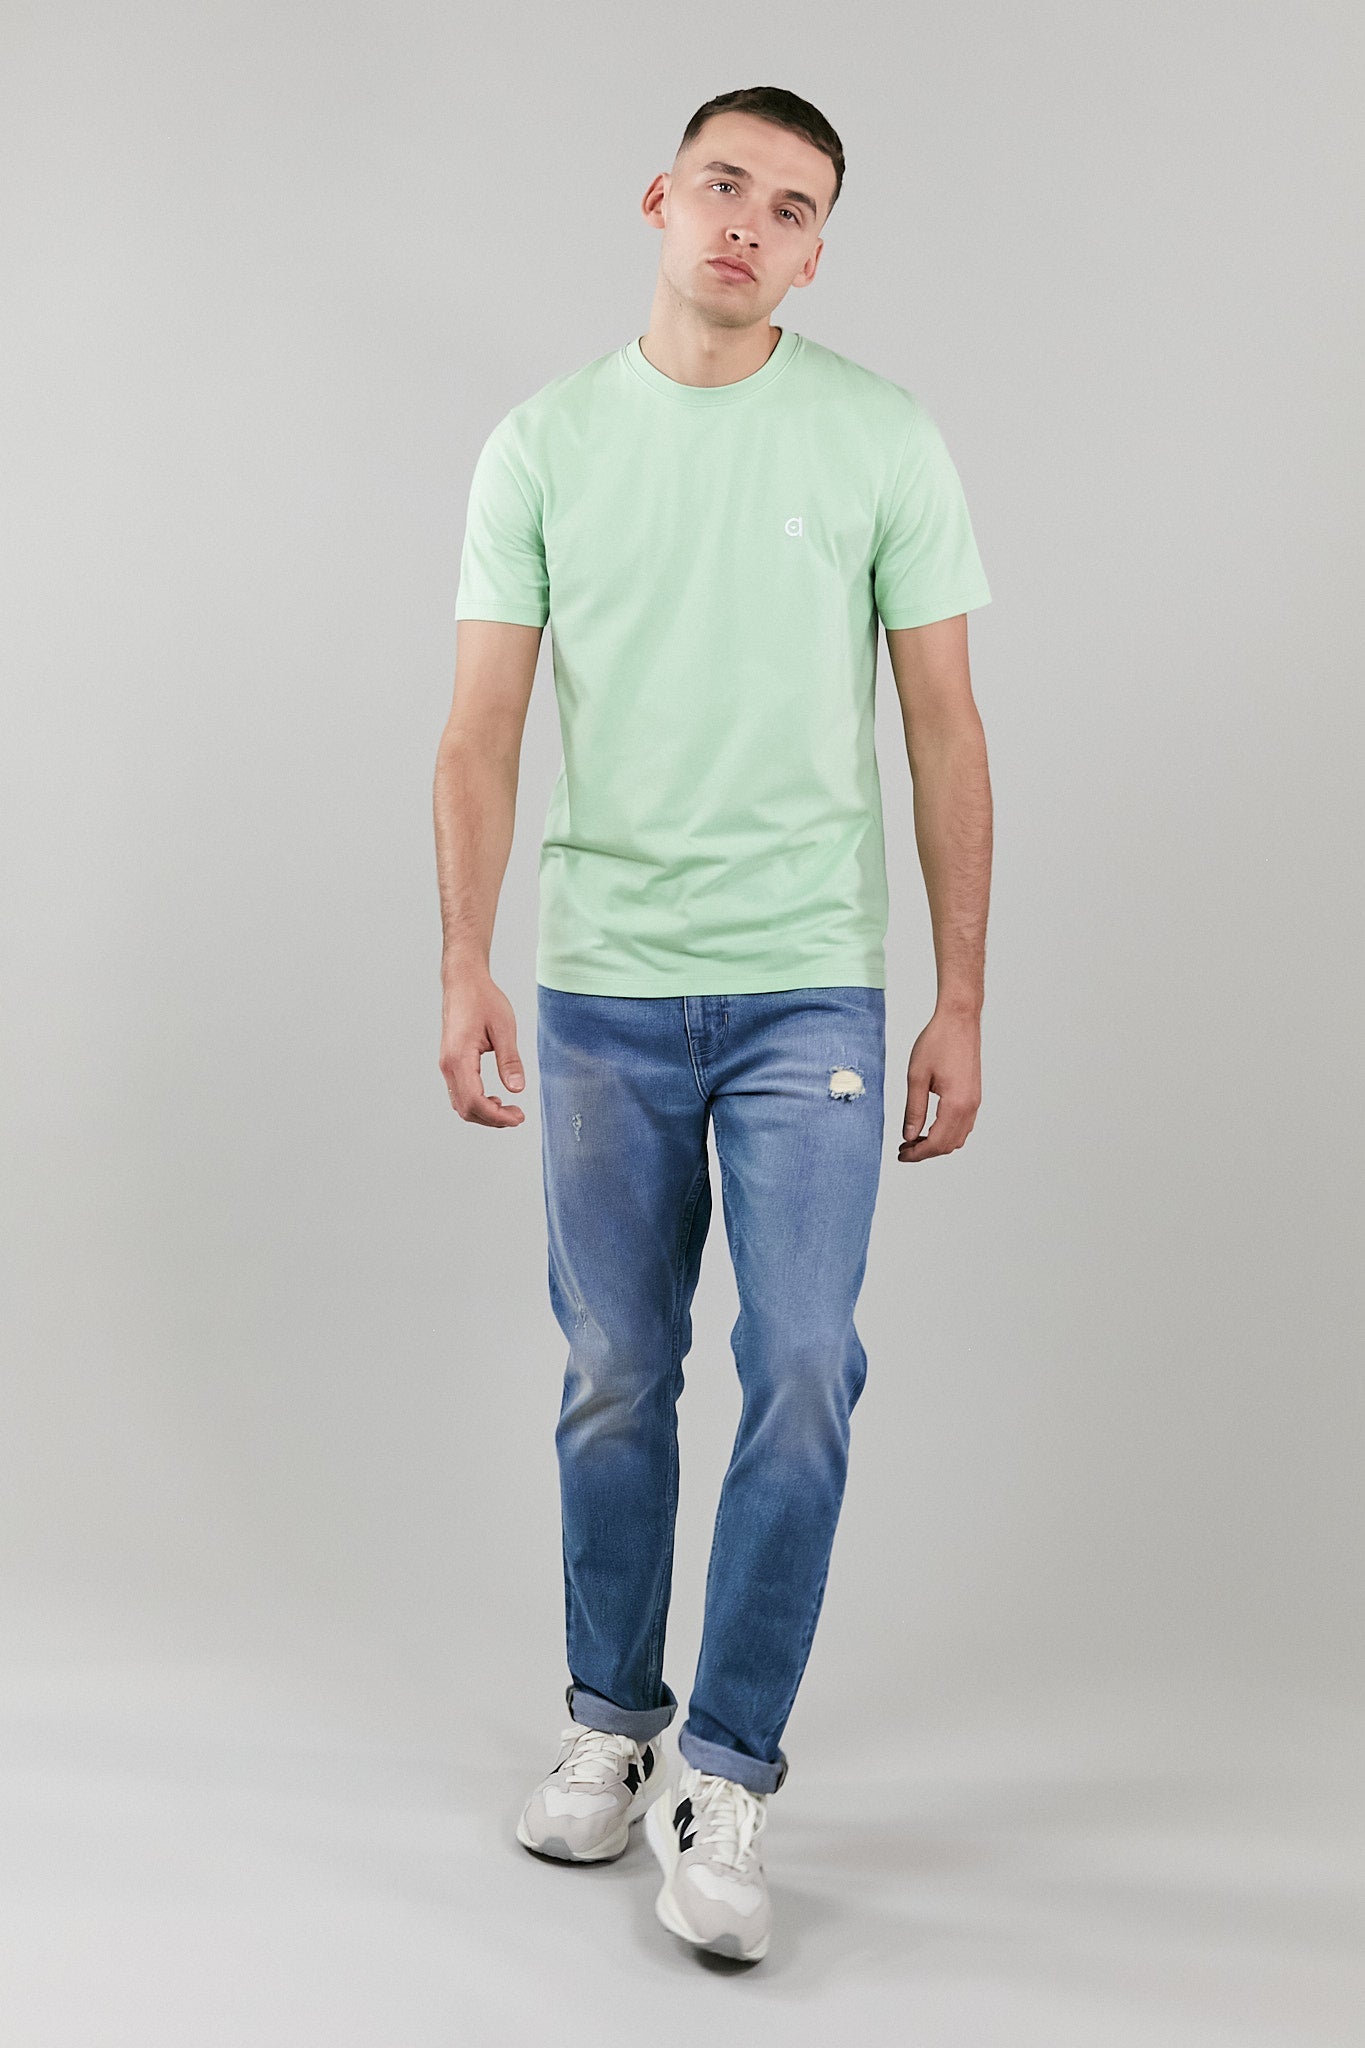 light green low carbon t-shirt